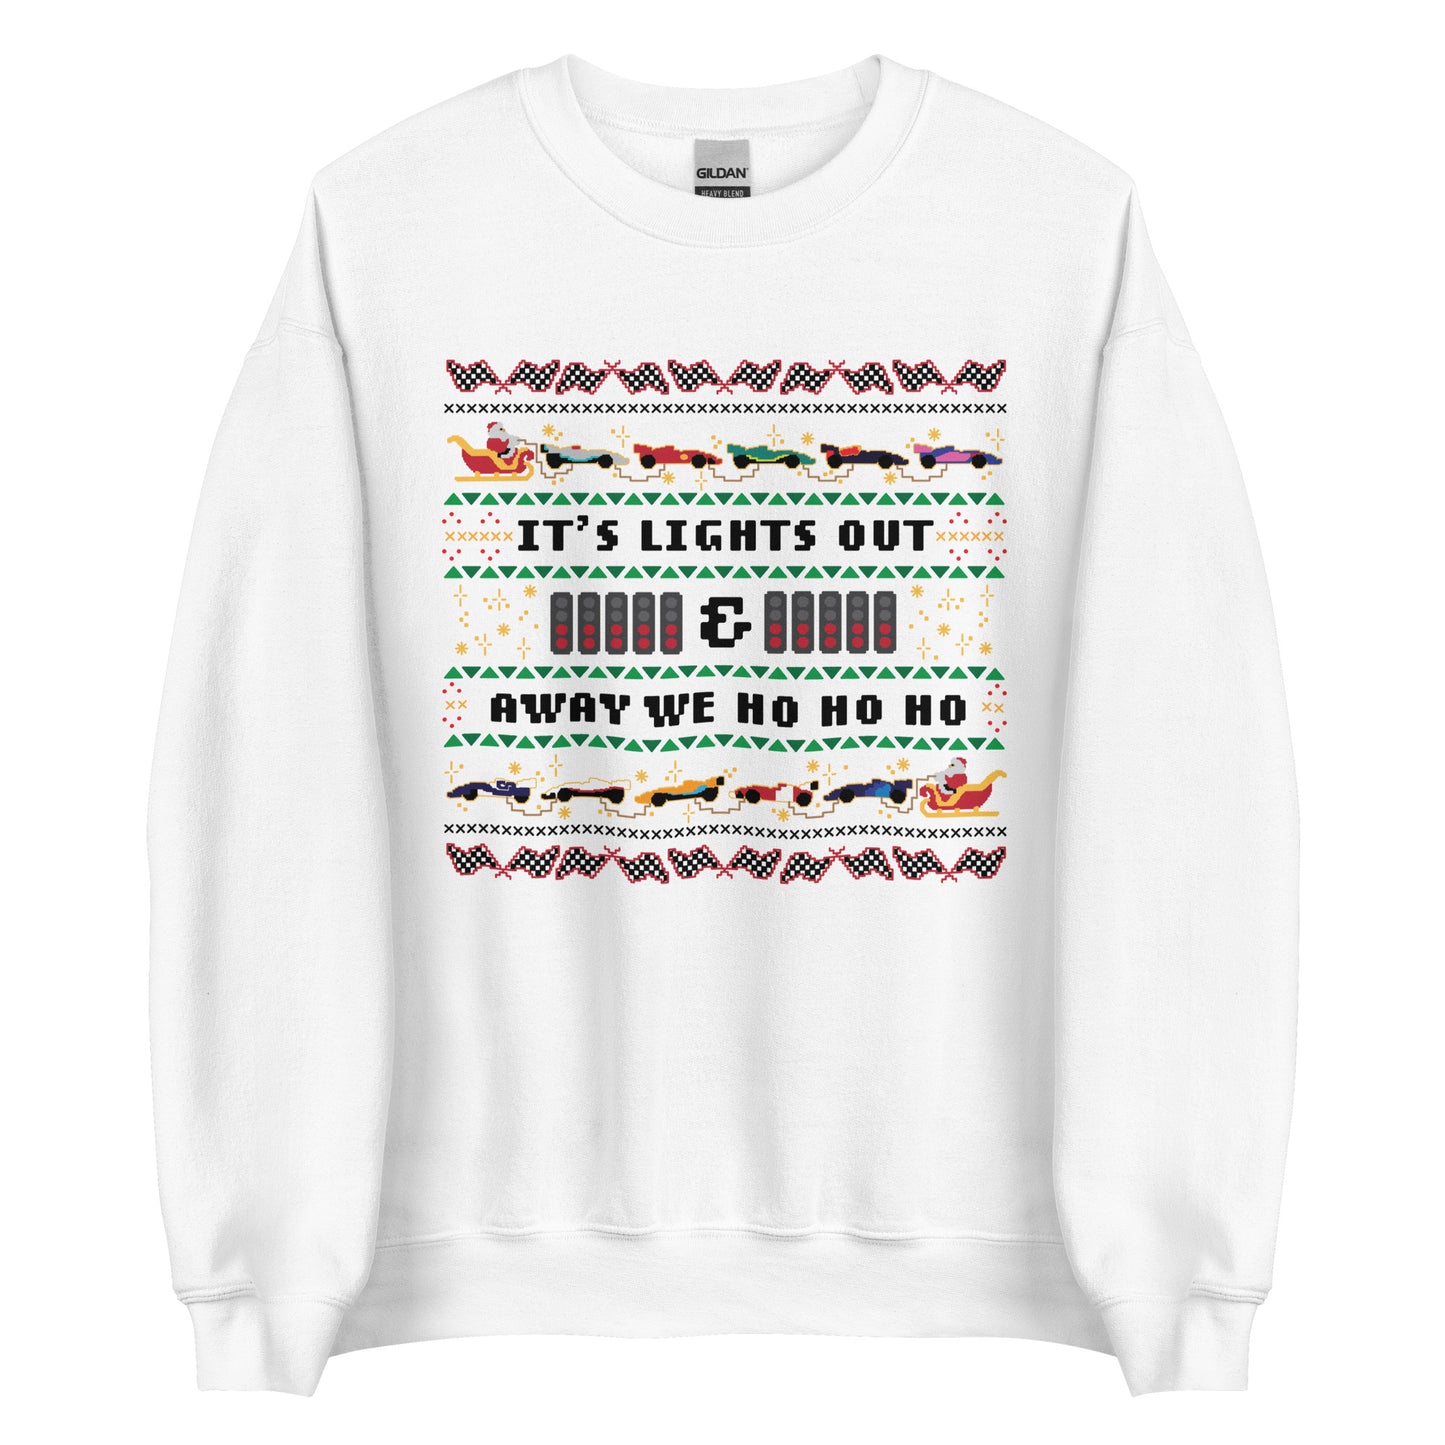 Lights out and away we ho ho ho sweater (white)